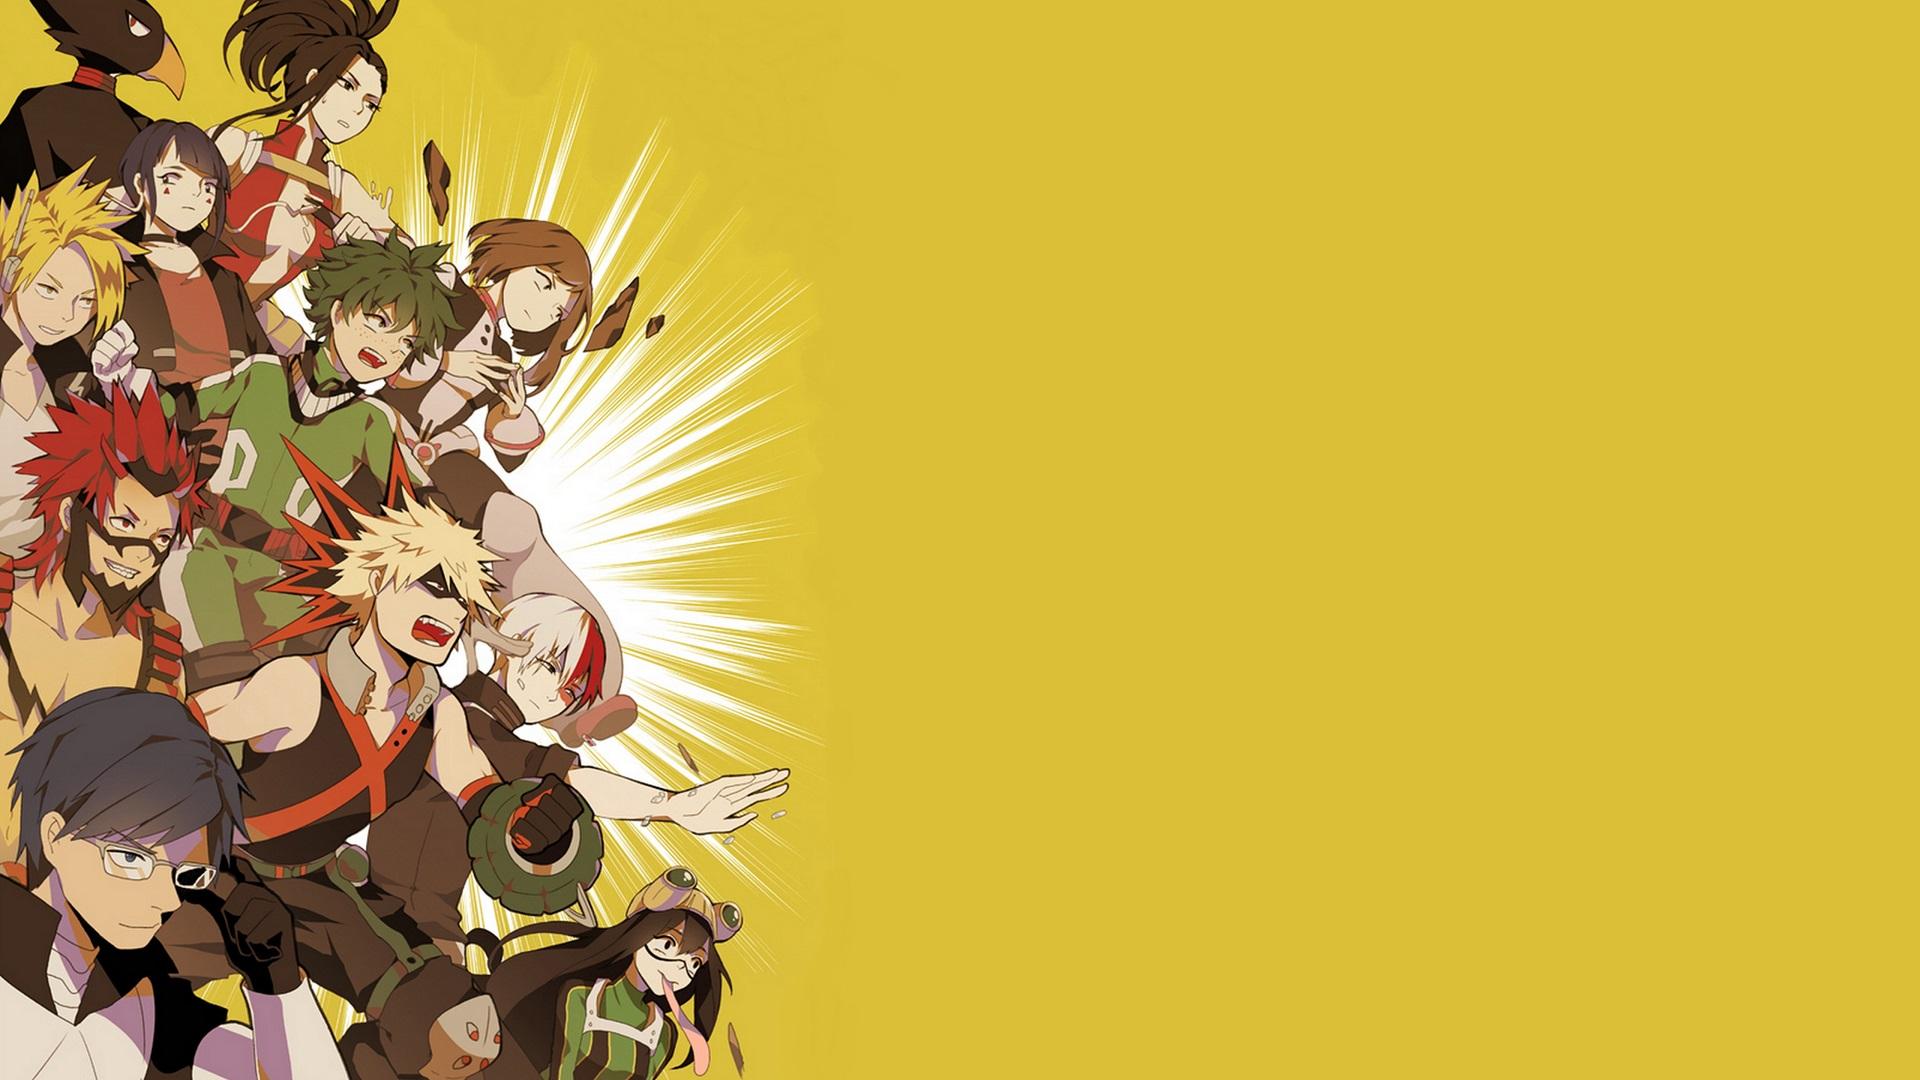 Wallpaper of Anime, My Hero Academia, Izuku Midorya